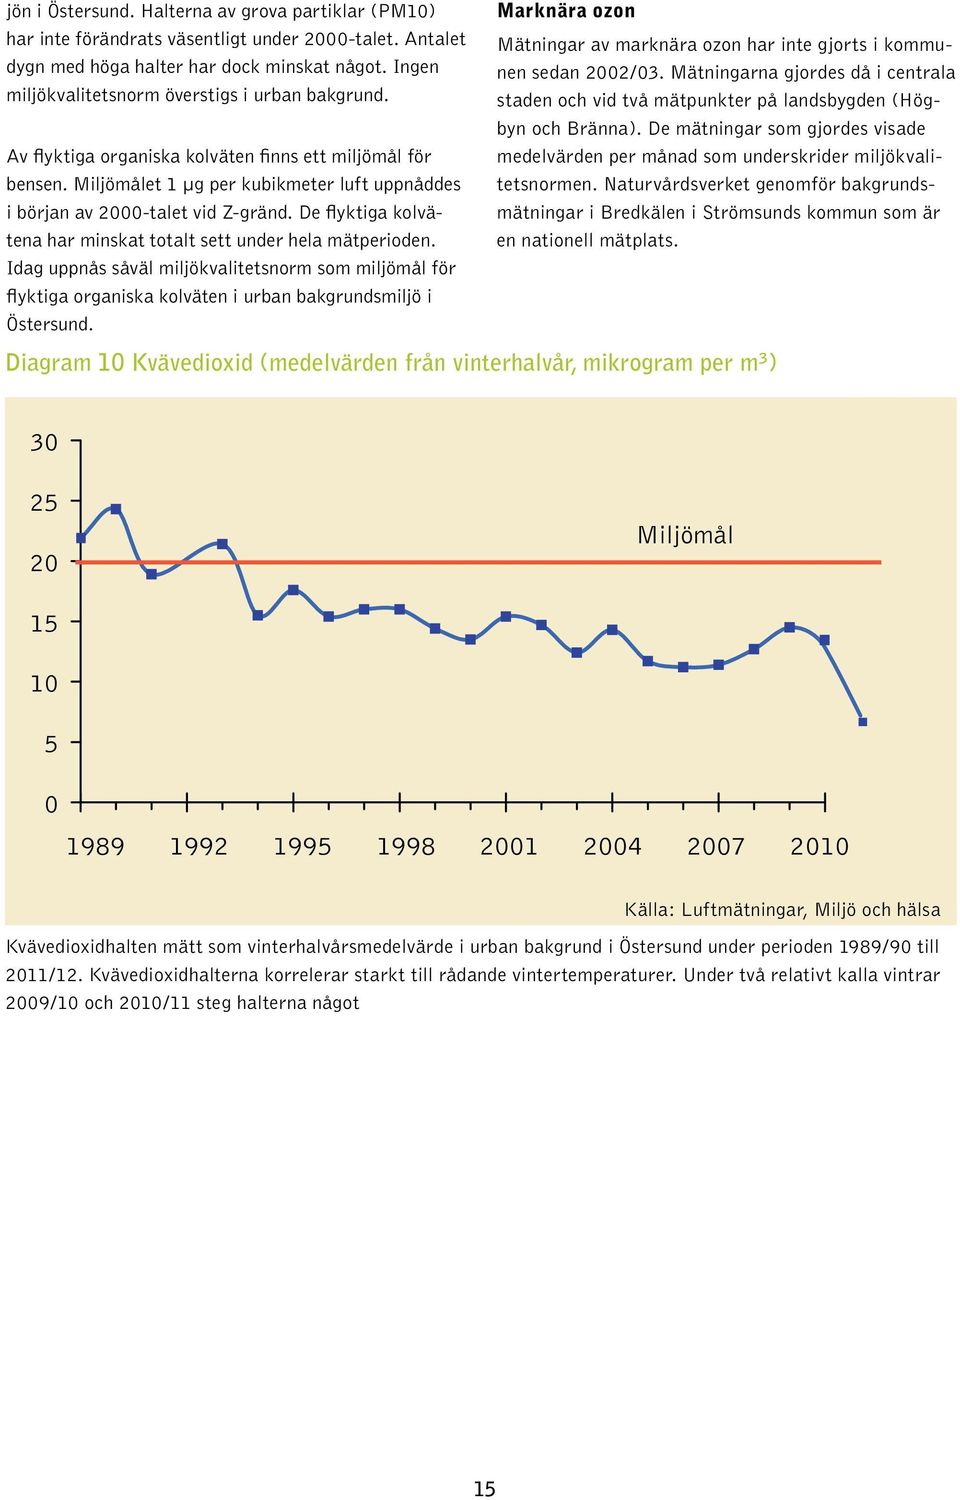 De flyktiga kolvätena har minskat totalt sett under hela mätperioden. Idag uppnås såväl miljökvalitetsnorm som miljömål för flyktiga organiska kolväten i urban bakgrundsmiljö i Östersund.